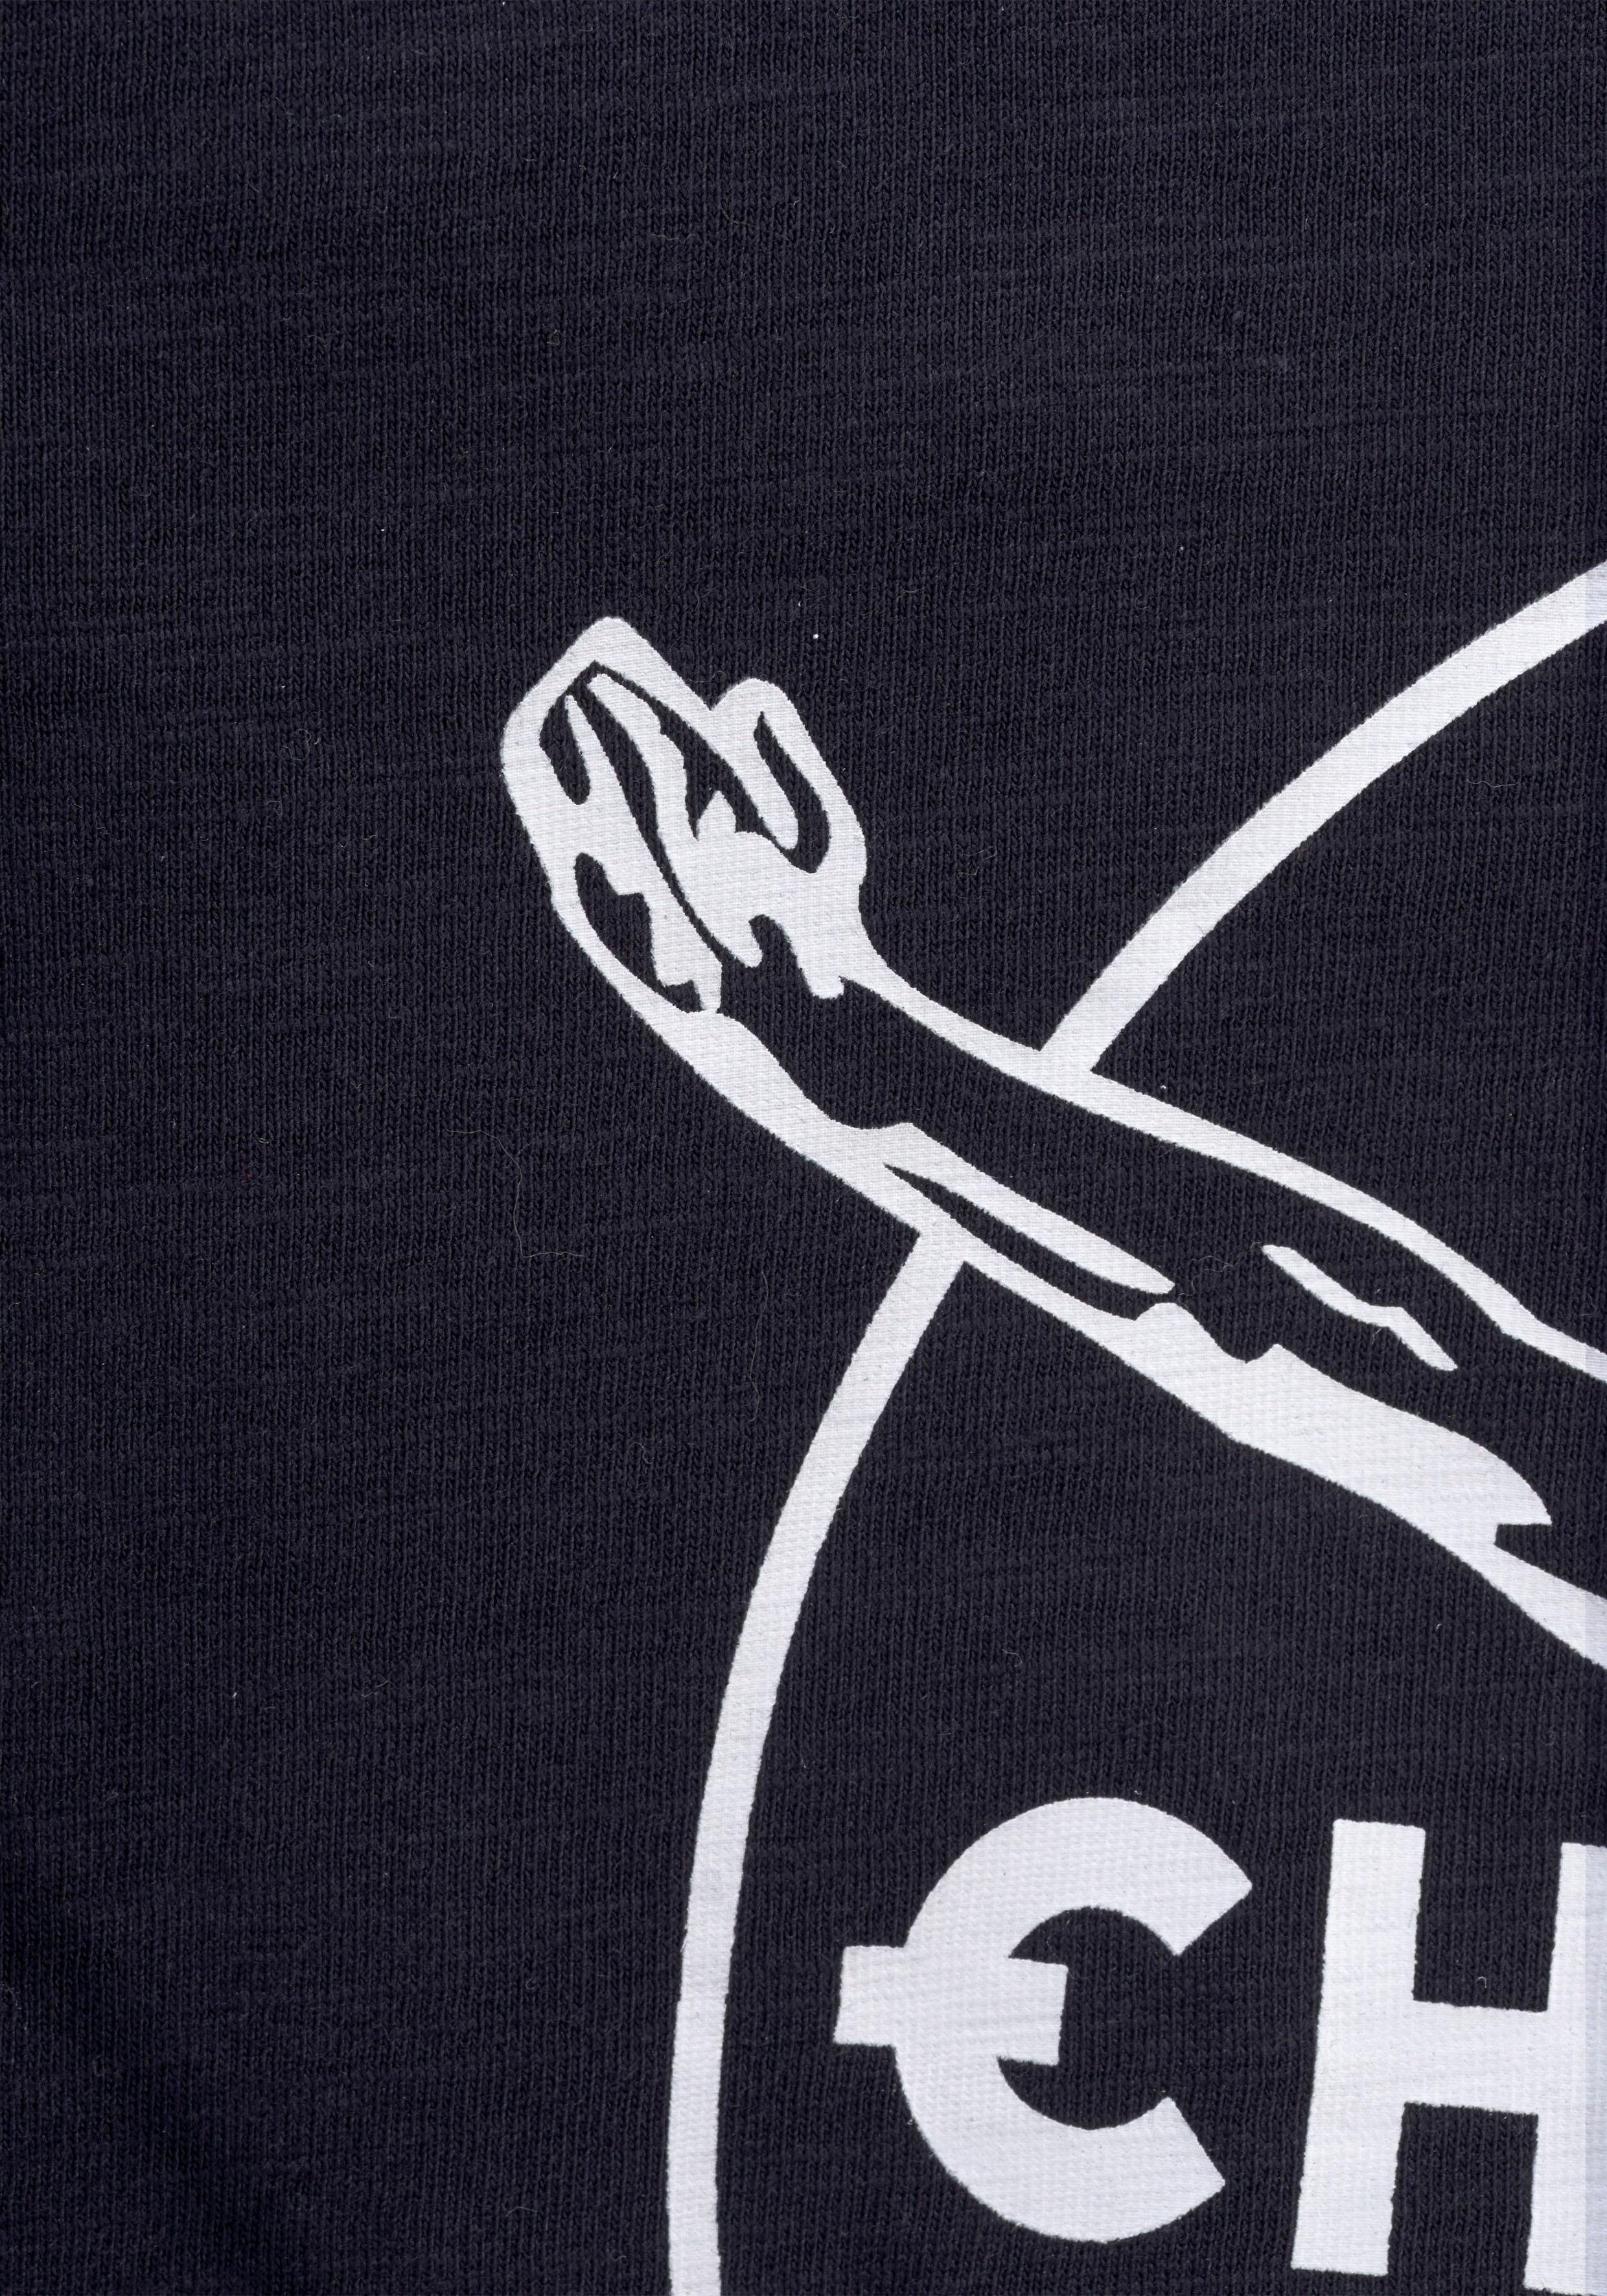 BASIC Chiemsee vorn T-Shirt Logodruck mit